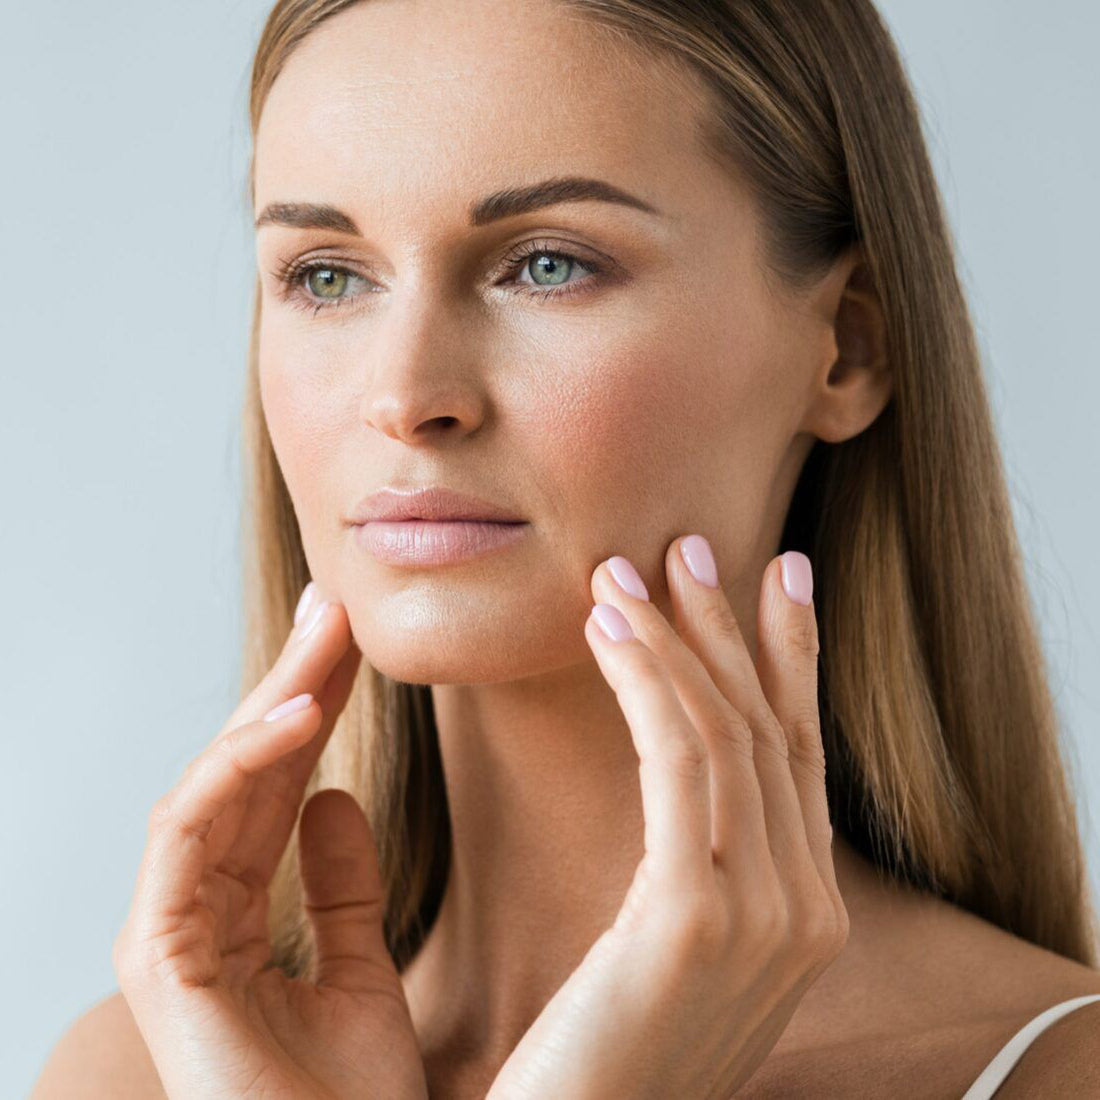 11 τρόποι με τους οποίους μπορούμε να καθυστερήσουμε τη πρόωρη γήρανσης του δέρματος.